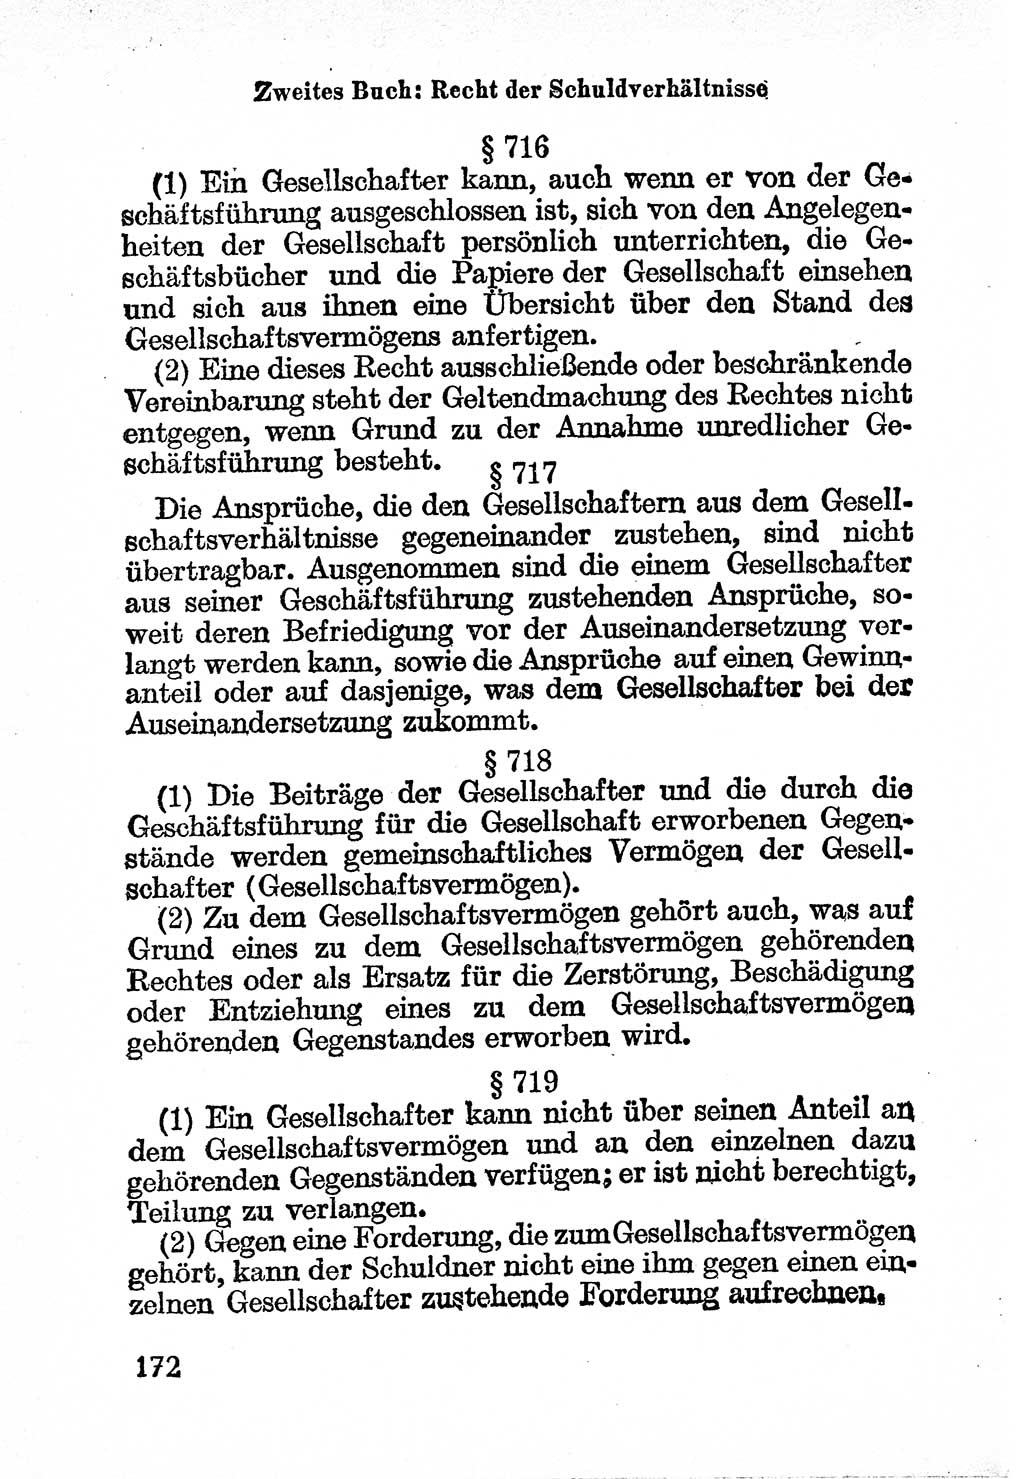 Bürgerliches Gesetzbuch (BGB) nebst wichtigen Nebengesetzen [Deutsche Demokratische Republik (DDR)] 1956, Seite 172 (BGB Nebenges. DDR 1956, S. 172)